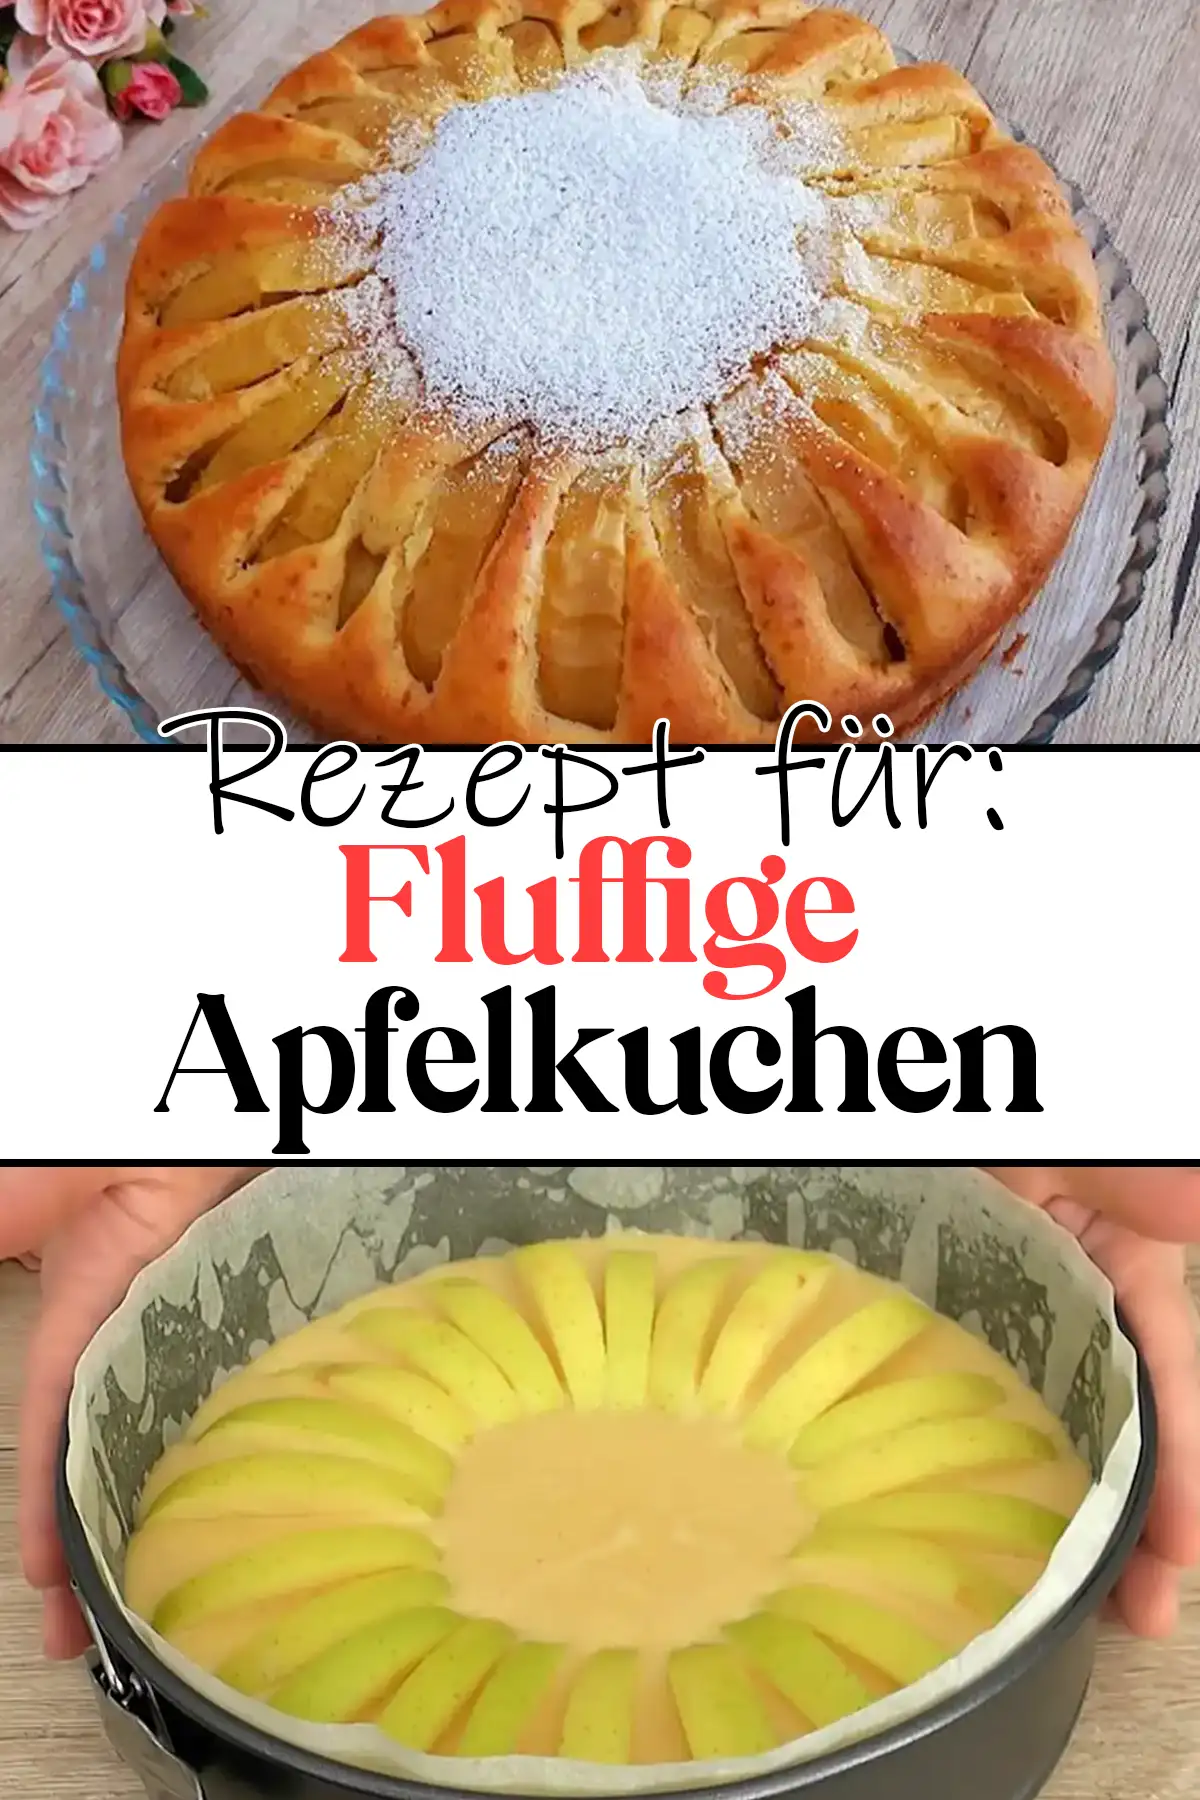 Fluffige Apfelkuchen Rezept